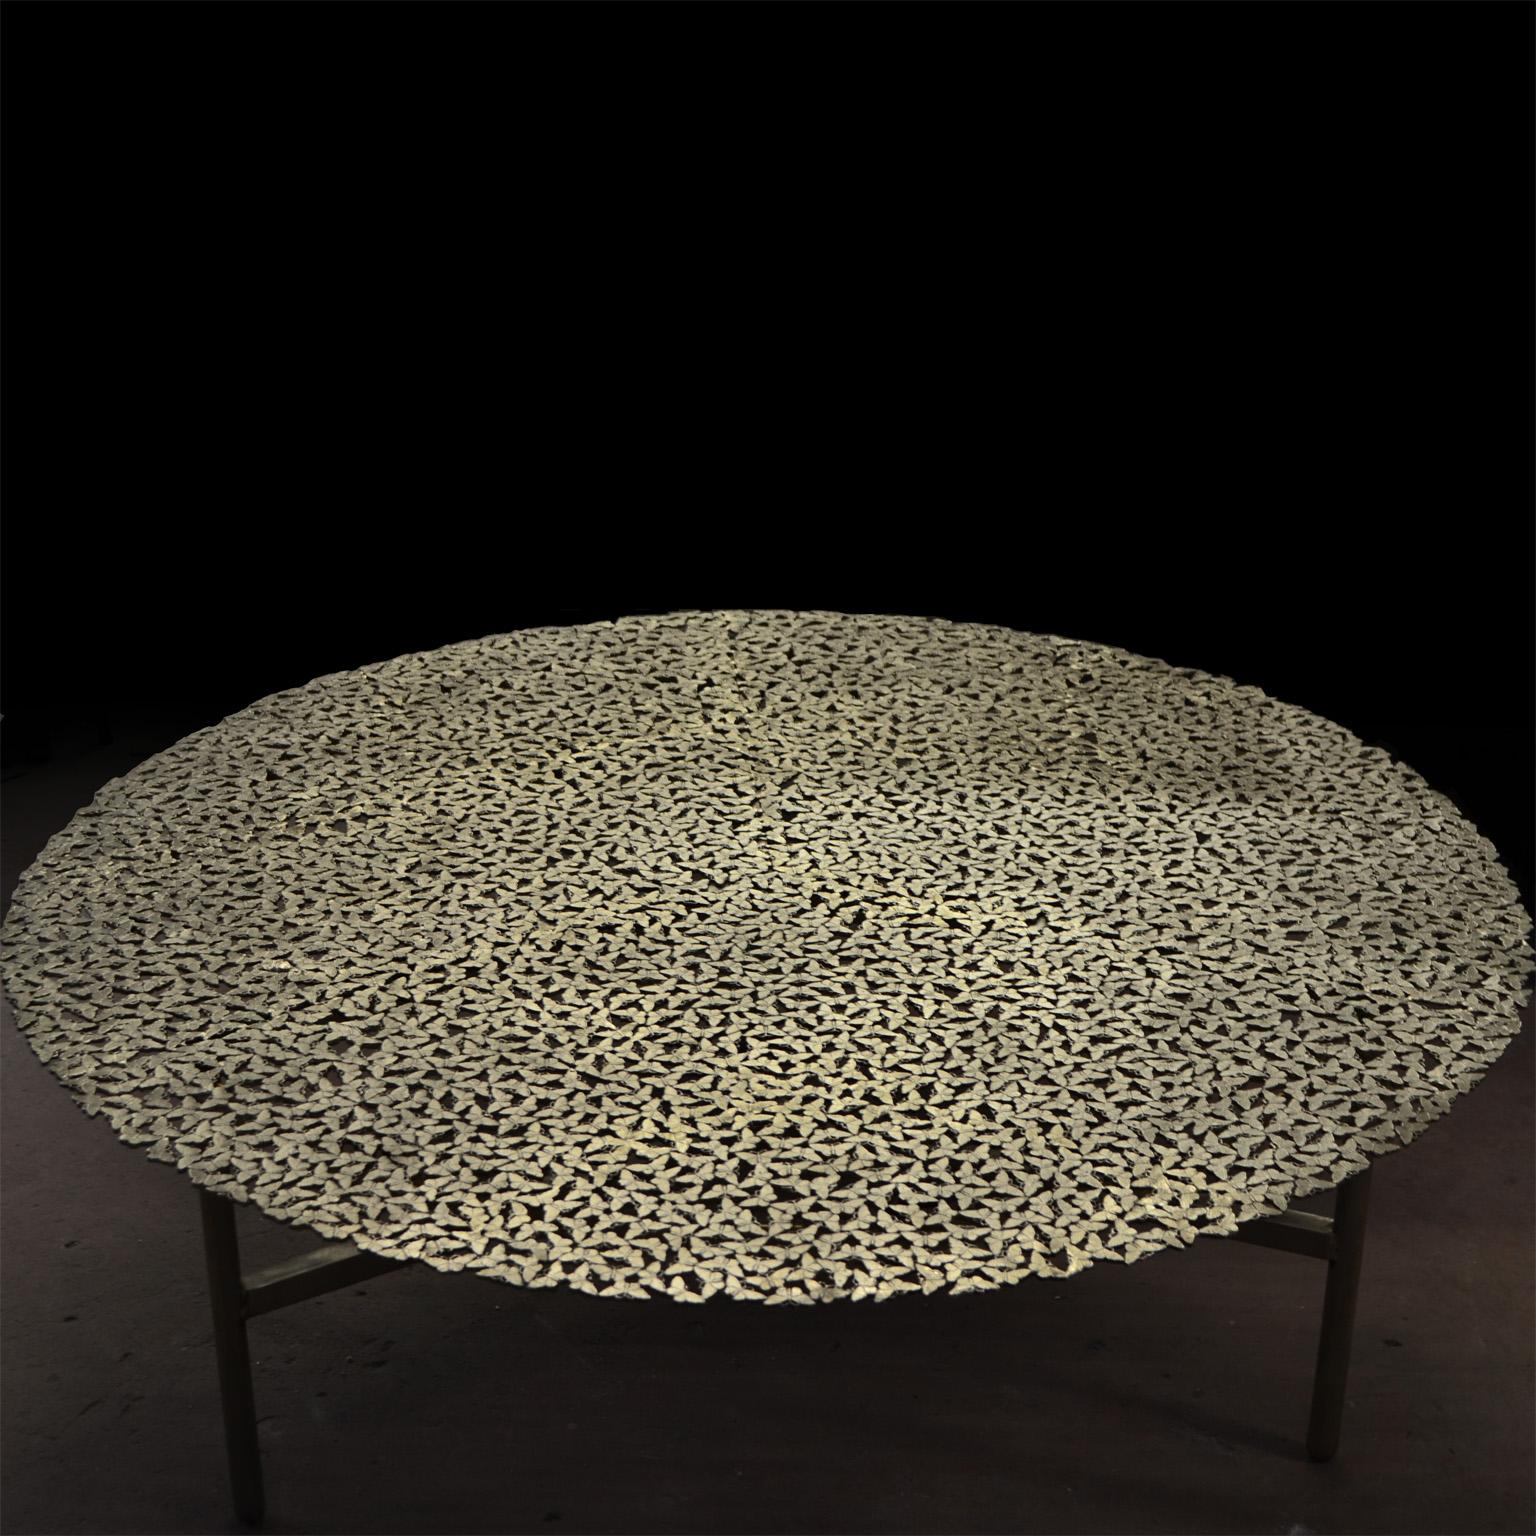 Table basse ronde Jean Bronze de Fred et Juul
Dimensions : Ø 120 x H 40 cm.
MATERIAL : Bronze.

Également disponible en finition noir-patiné ou blanc. Des tailles, matériaux ou finitions personnalisés sont disponibles sur demande. Veuillez nous